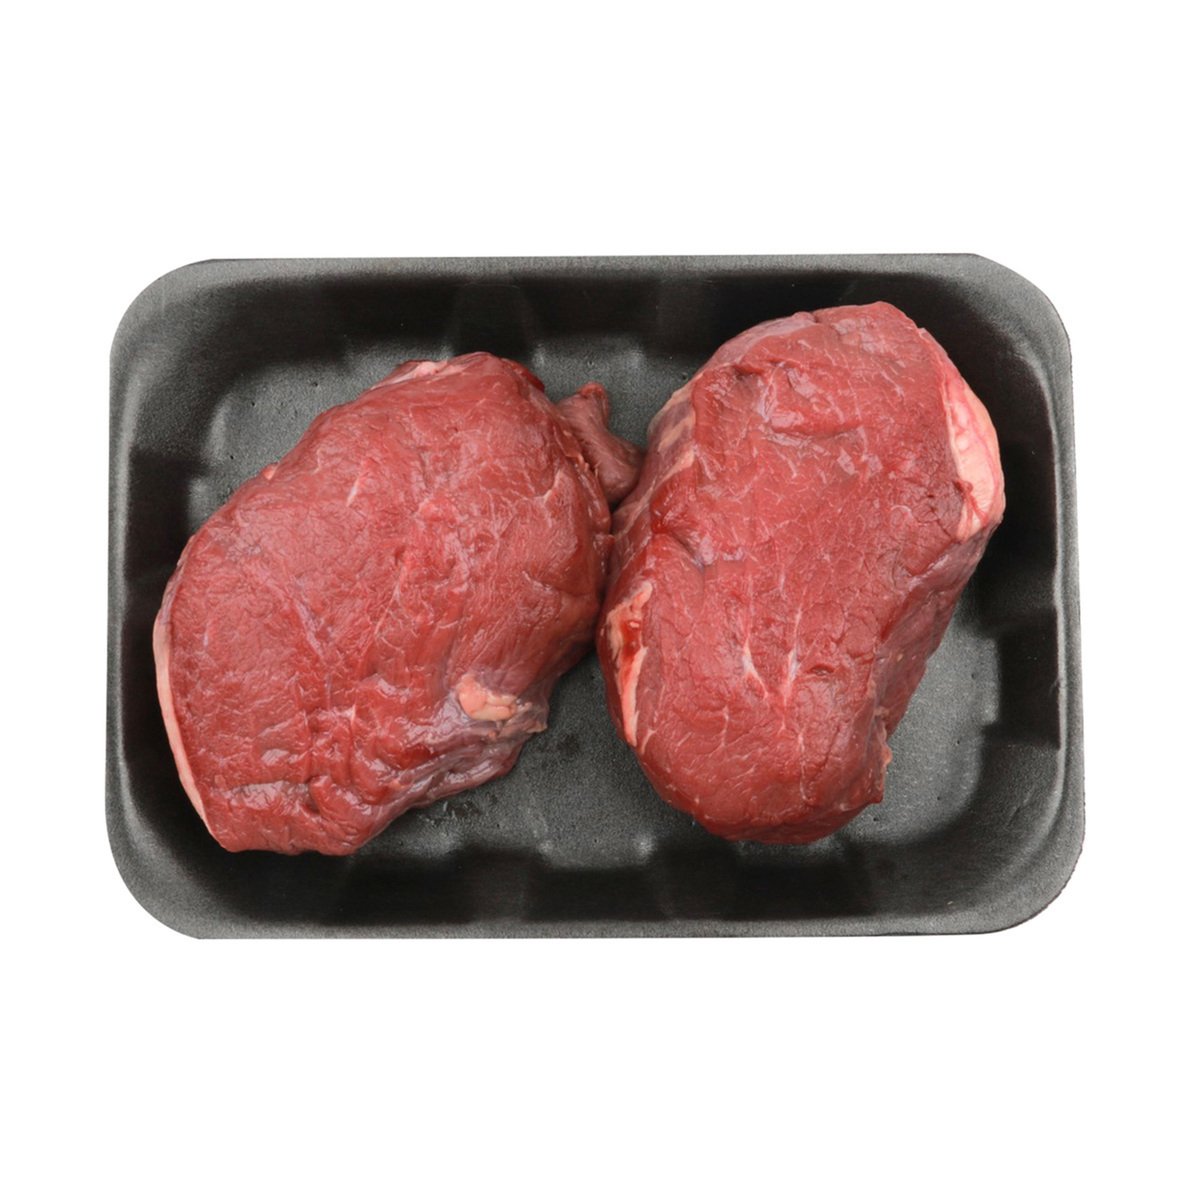 Buy Indian Buffalo Tenderloin 300 g Online at Best Price | Veal & Beef | Lulu UAE in UAE